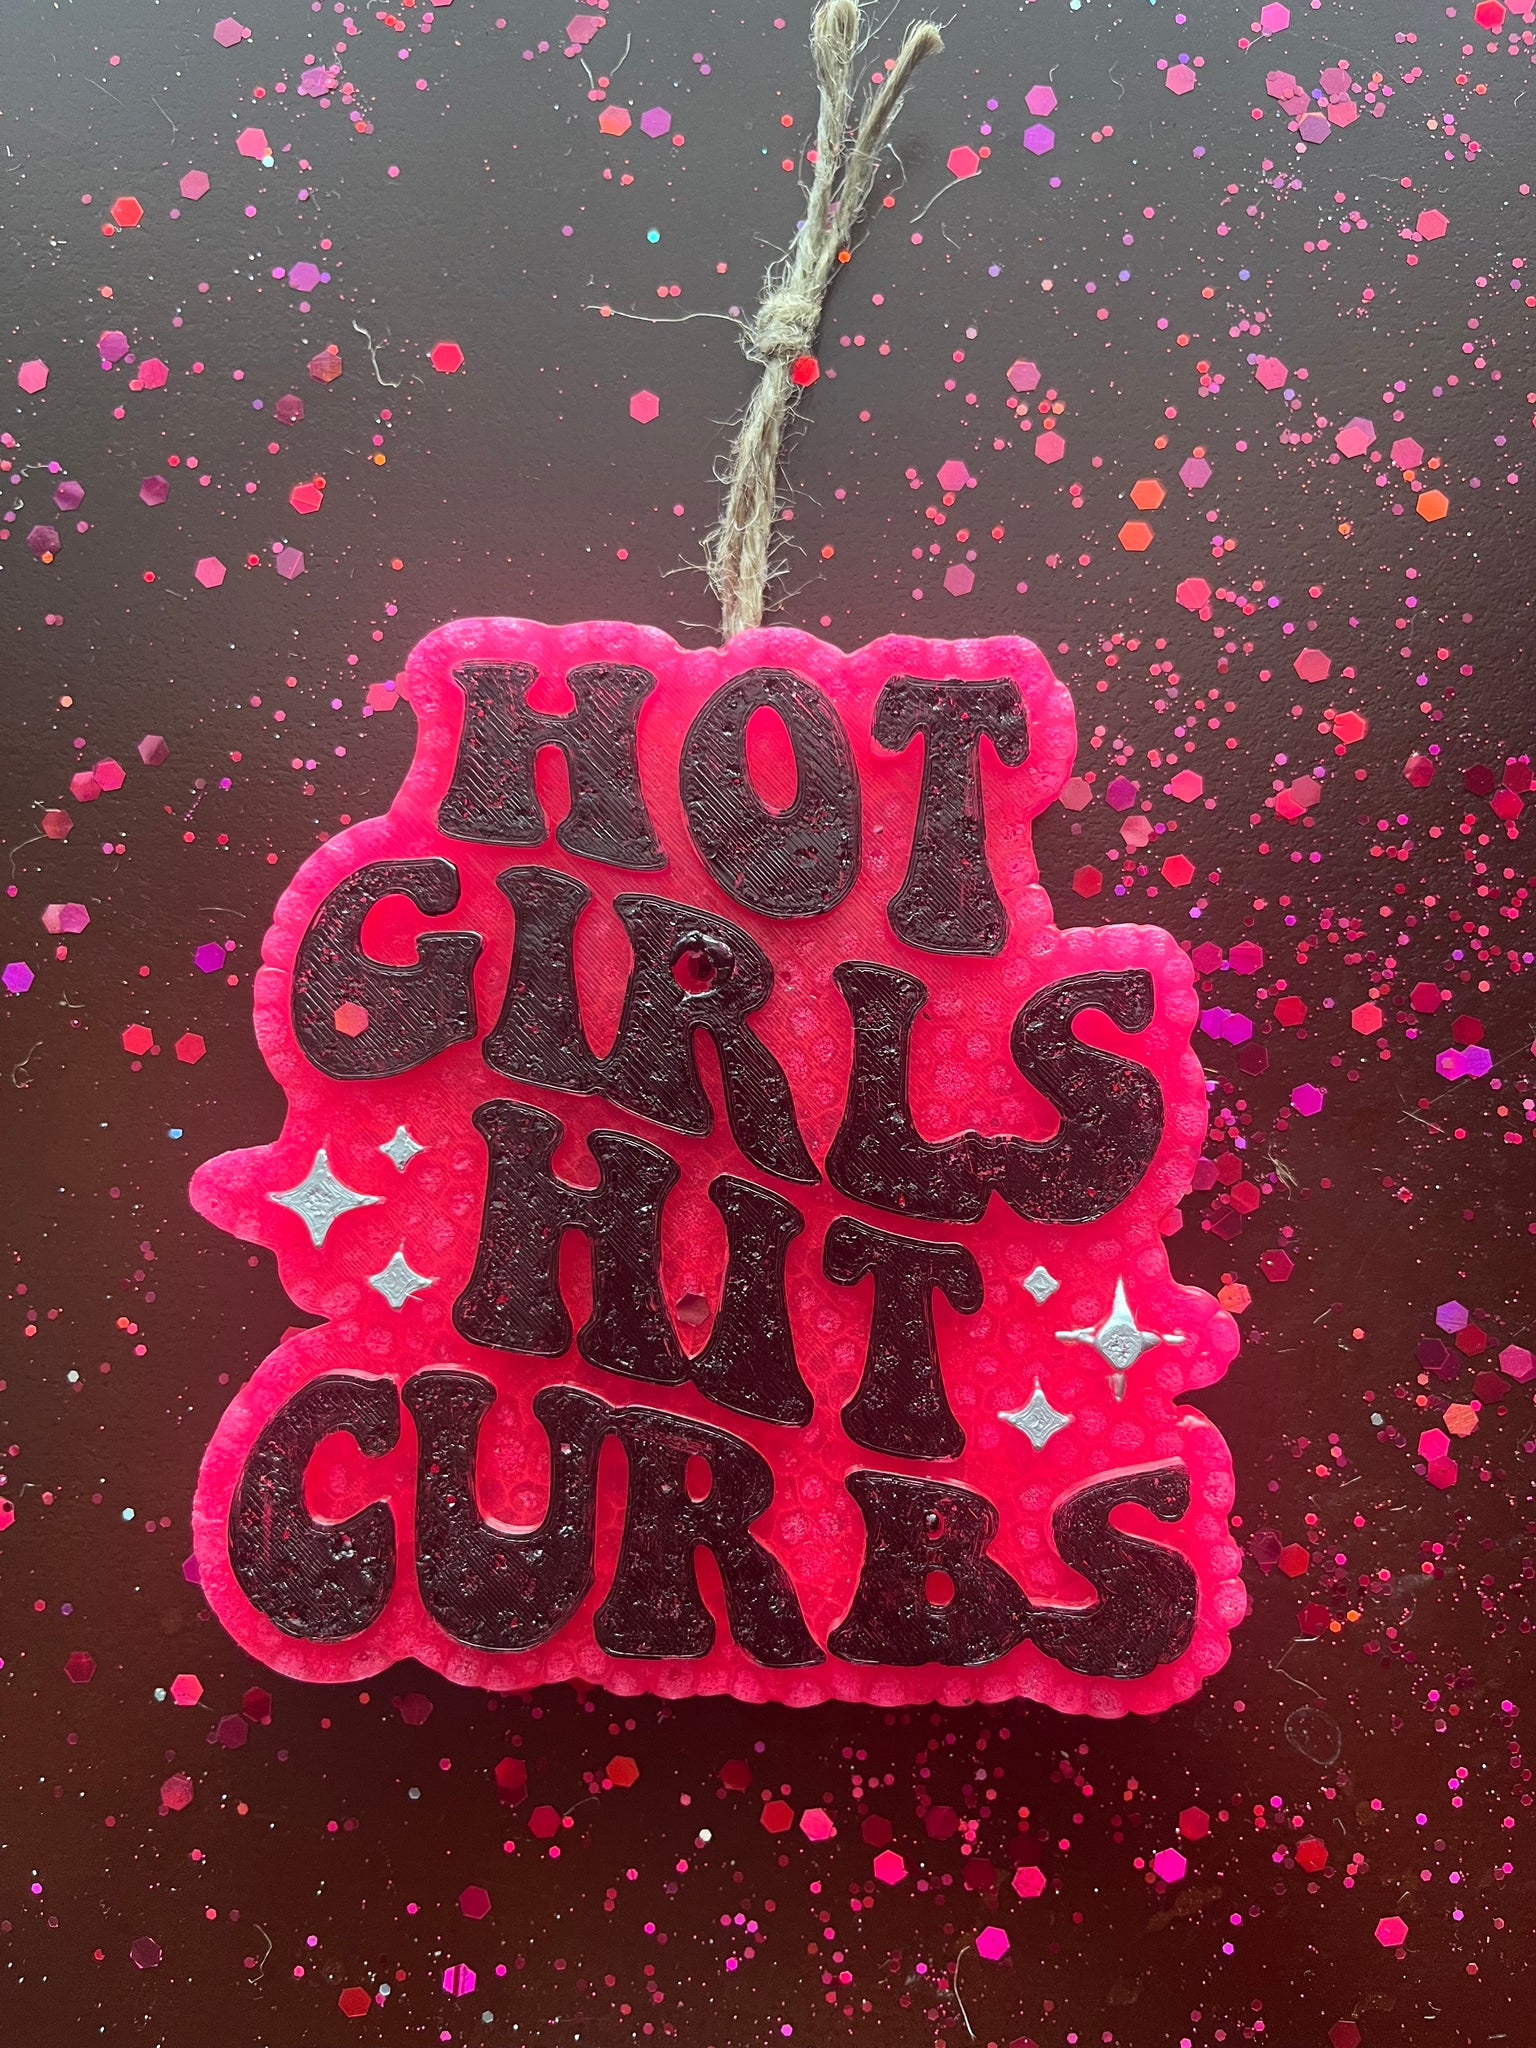 Hot Girls Hit Curbs Freshie